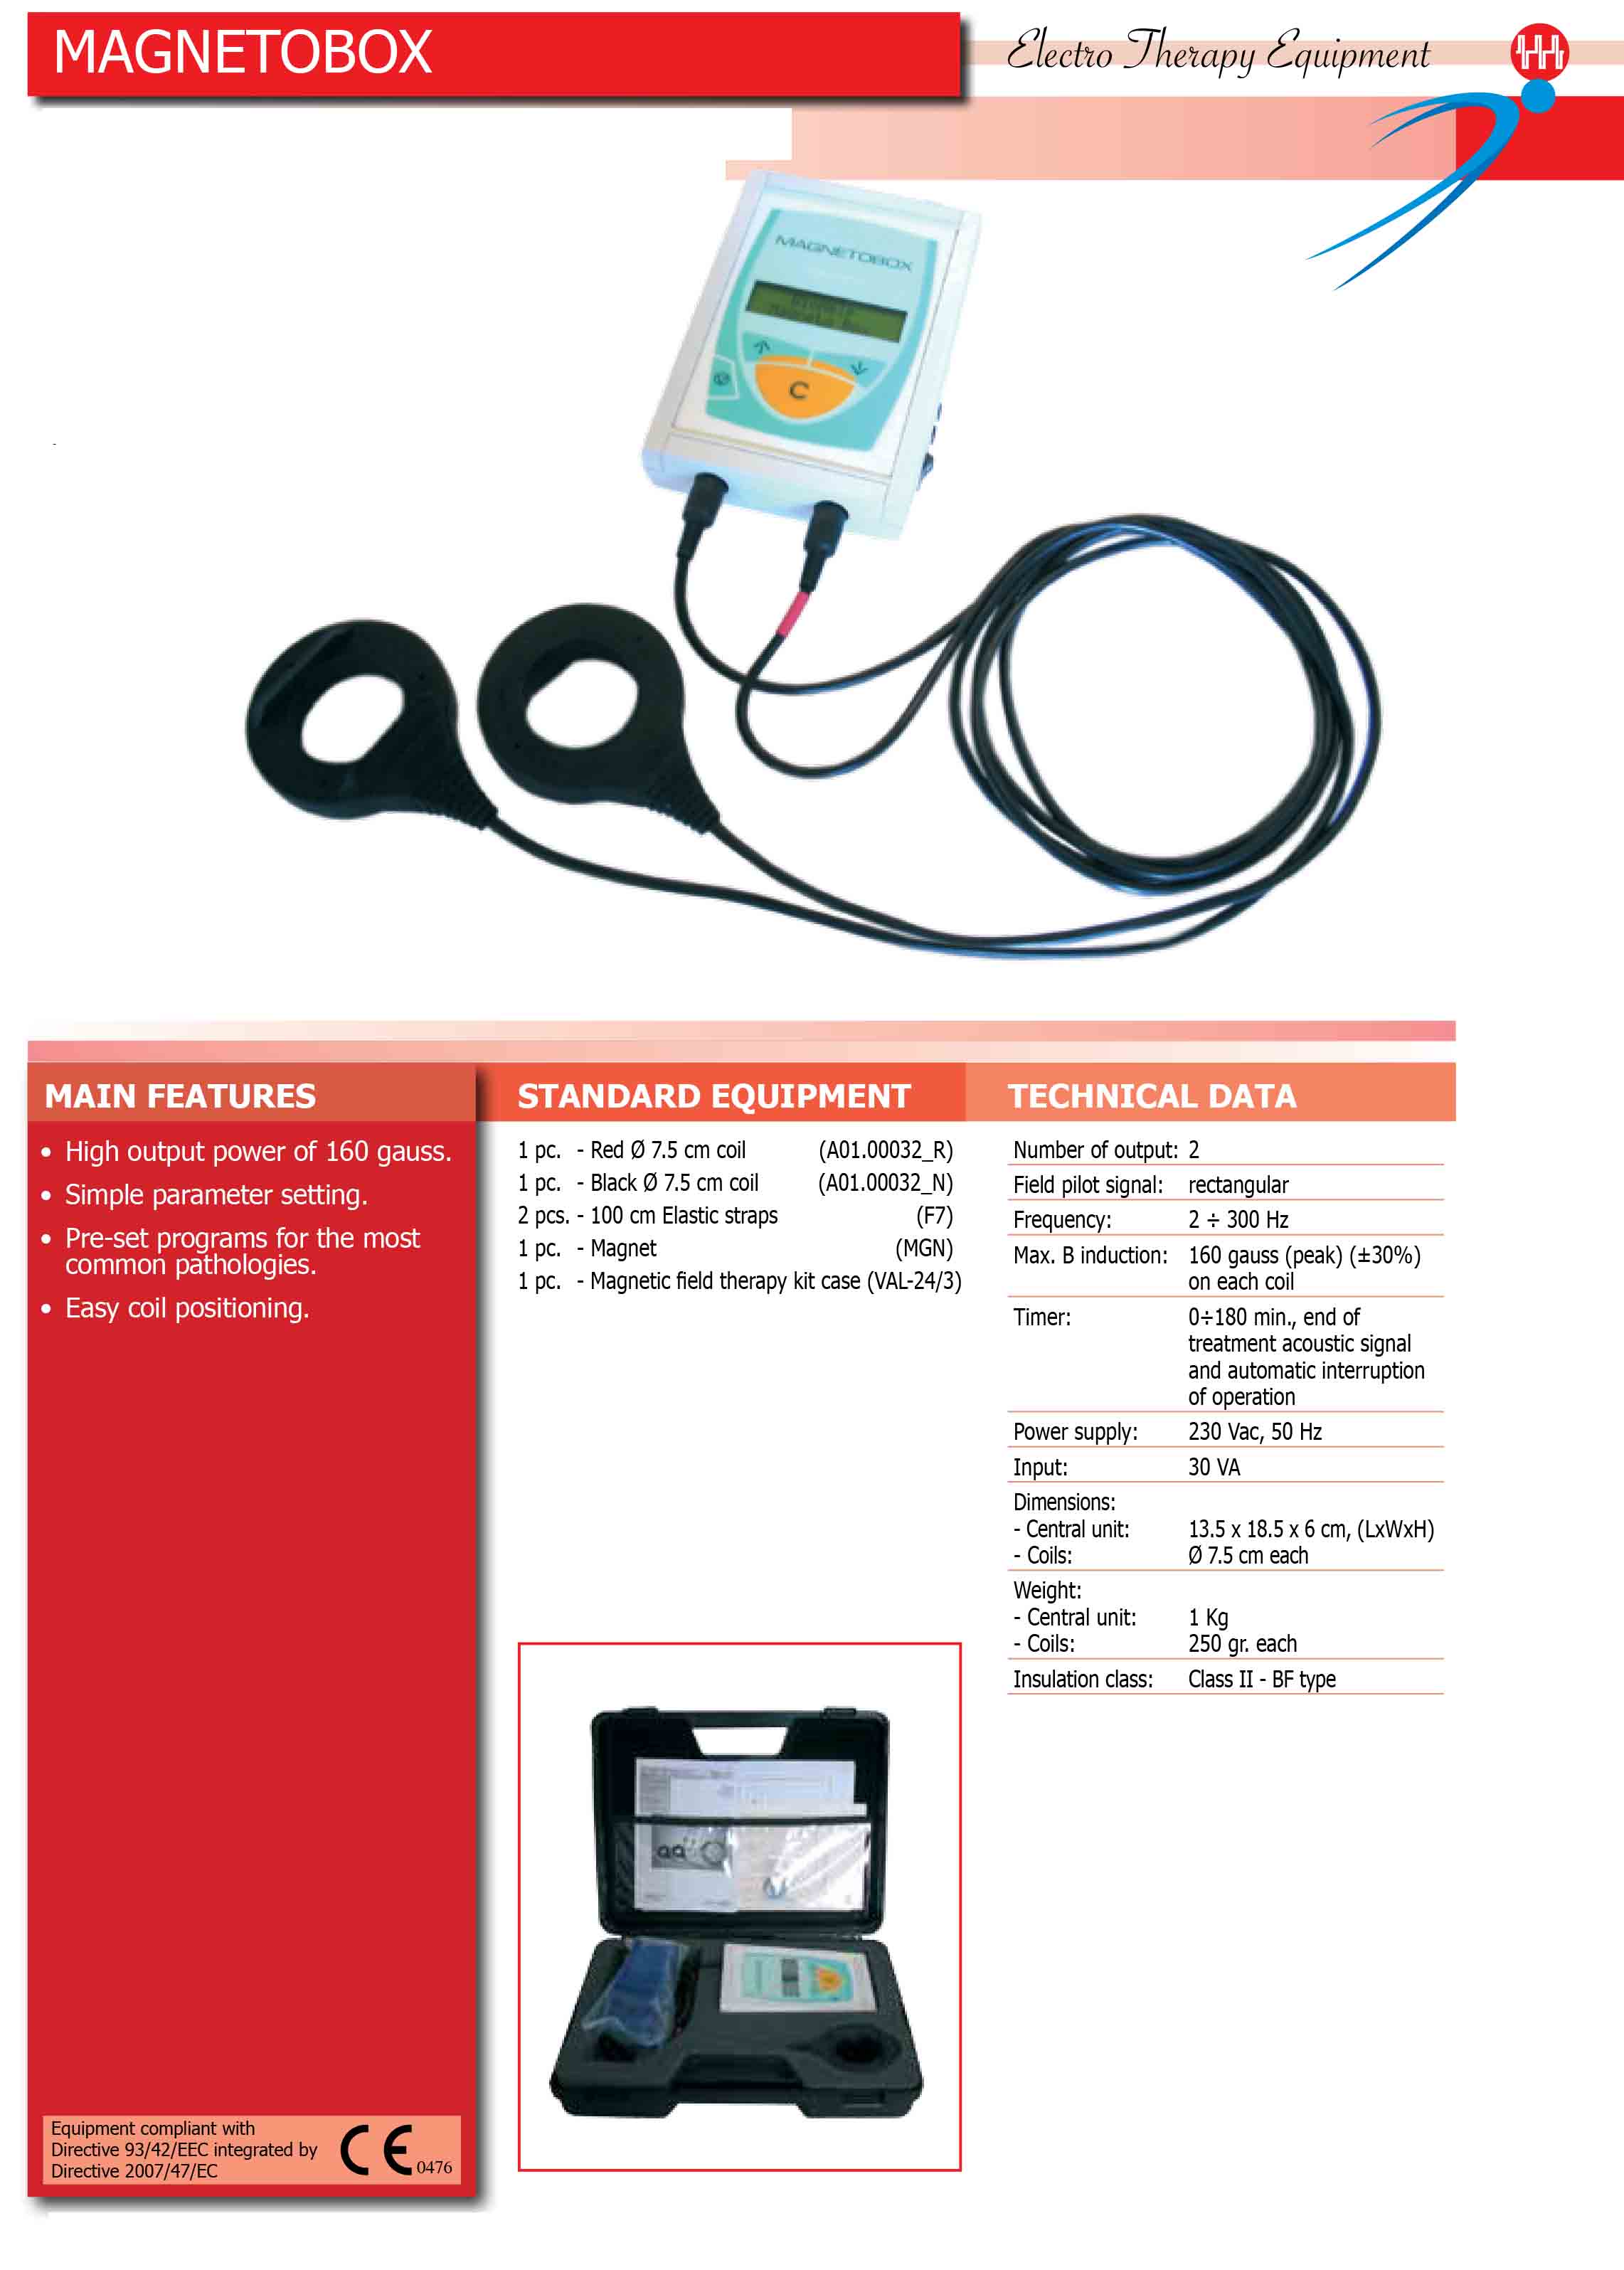 Especificaciones tecnicas esquipo magnetoterapia portatil MAGNETOBOX